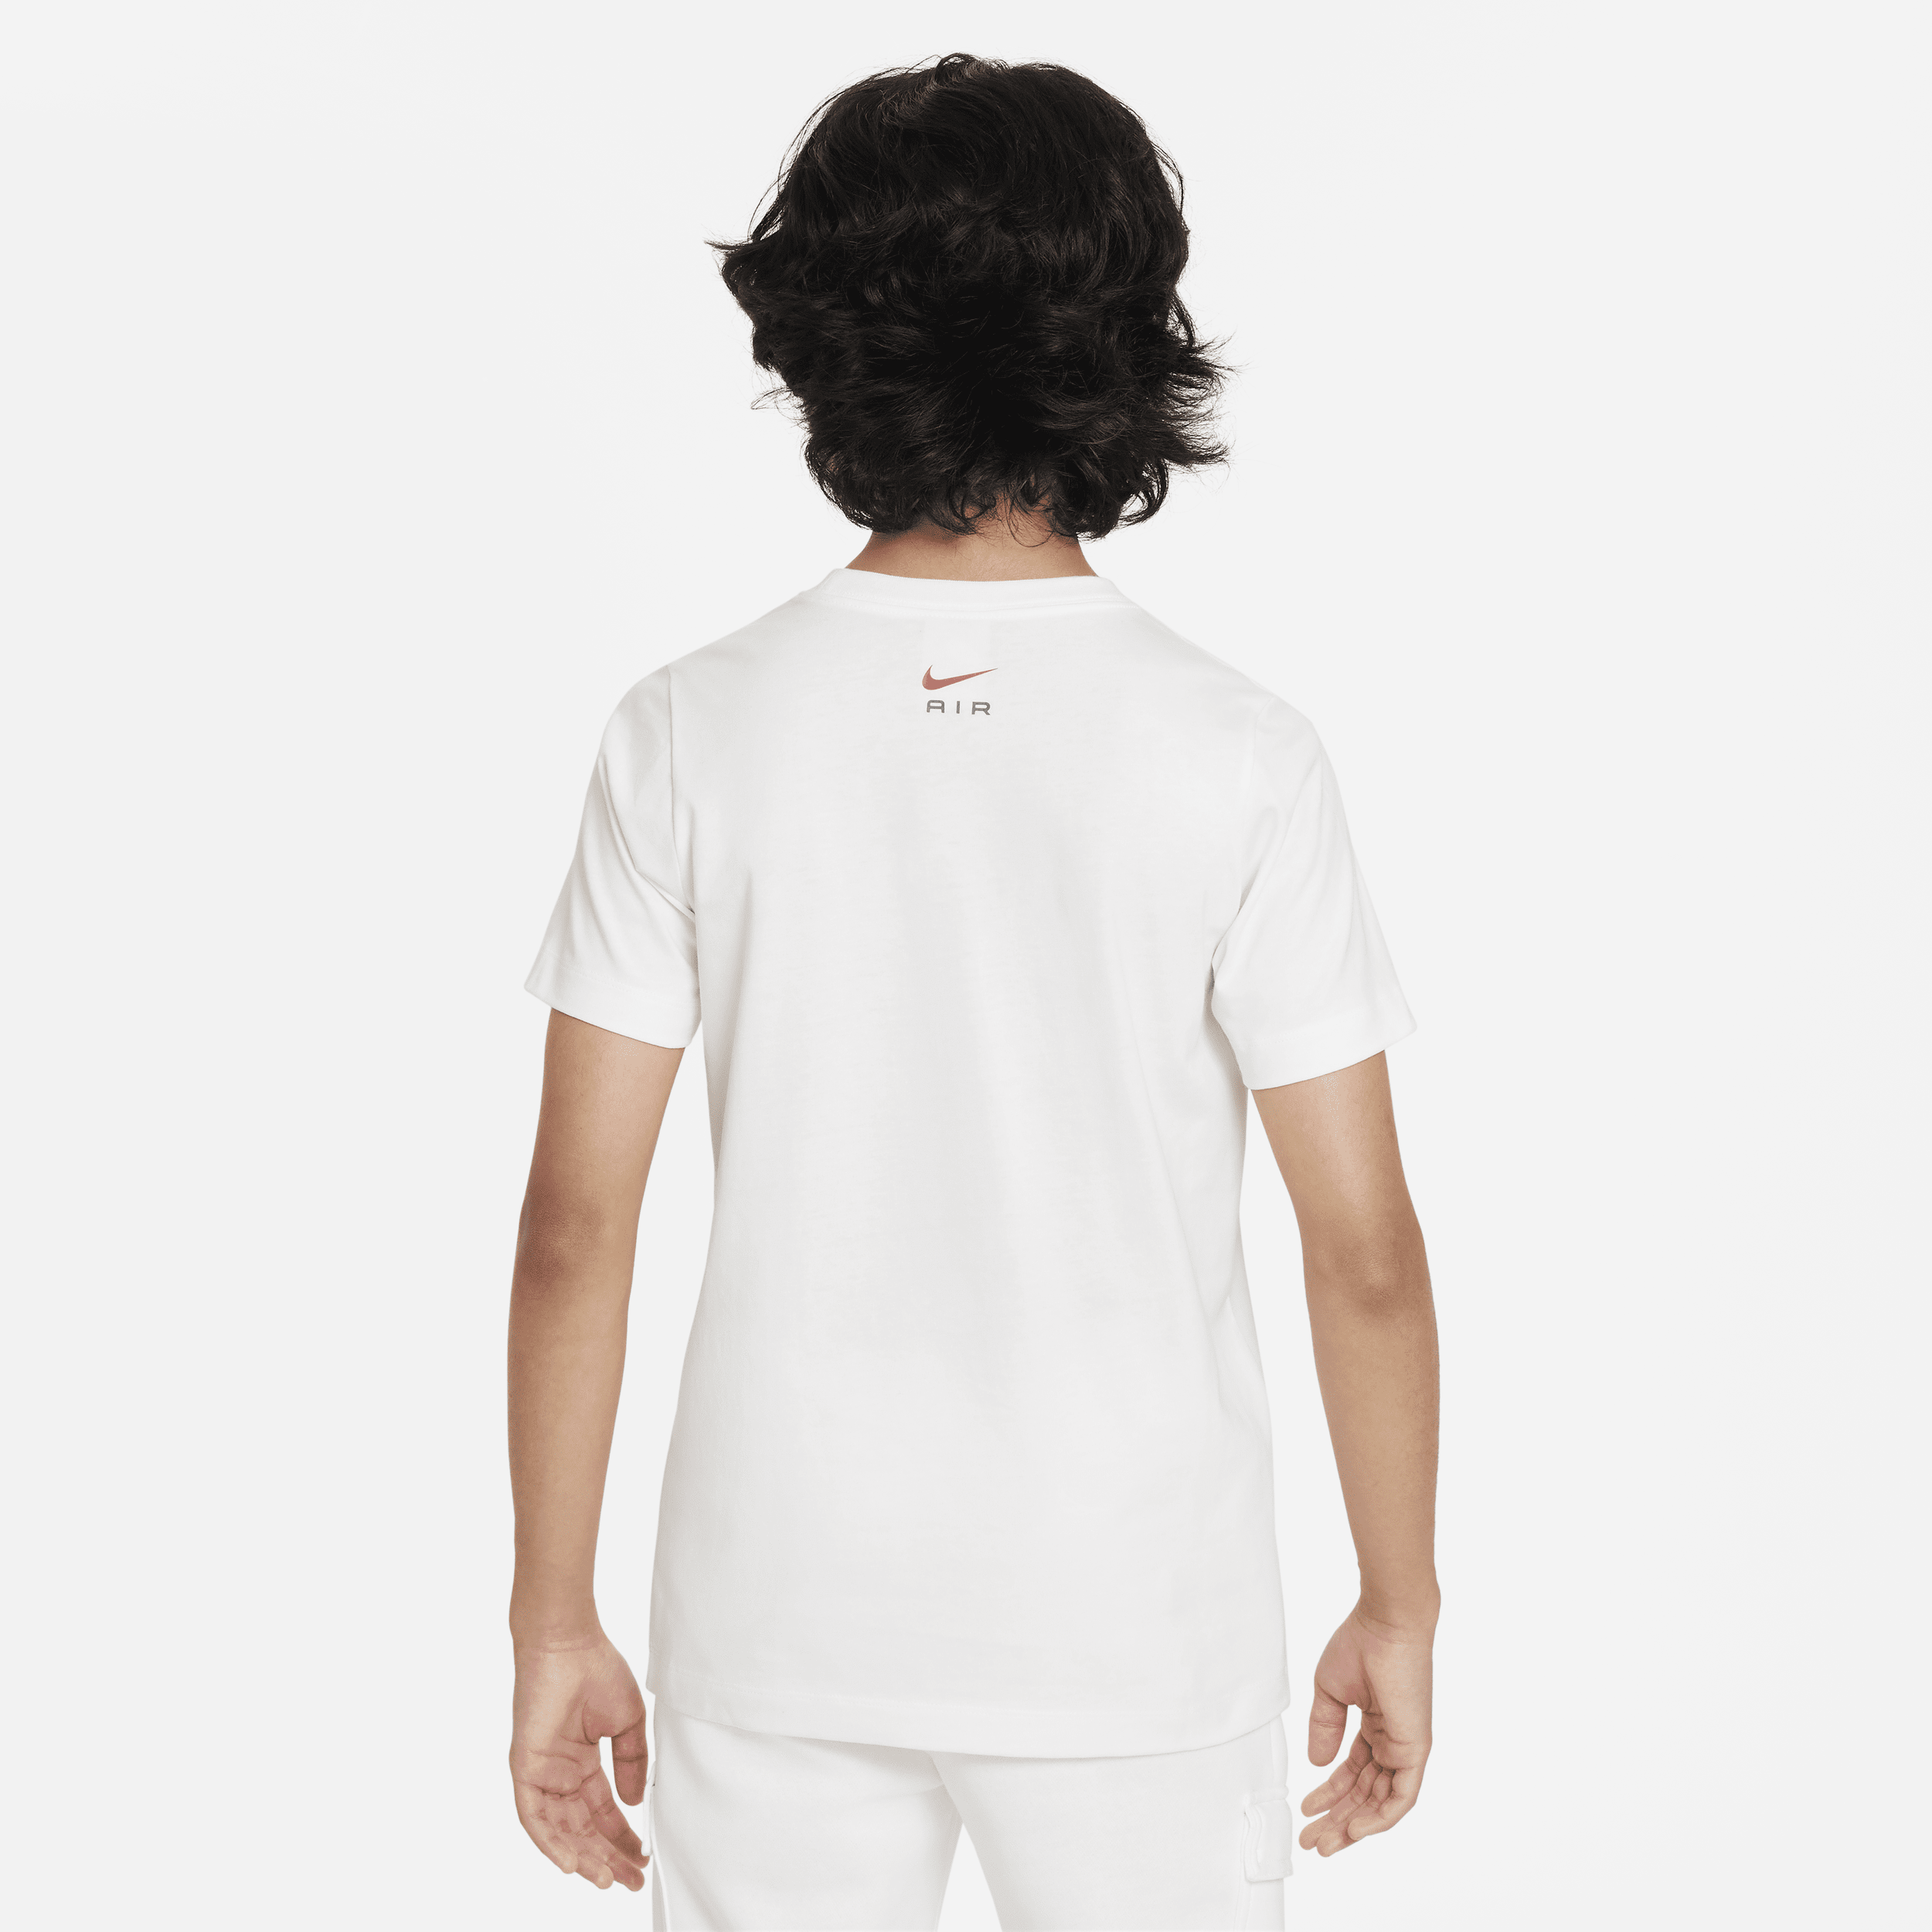 Nike Air T-shirt voor jongens Wit